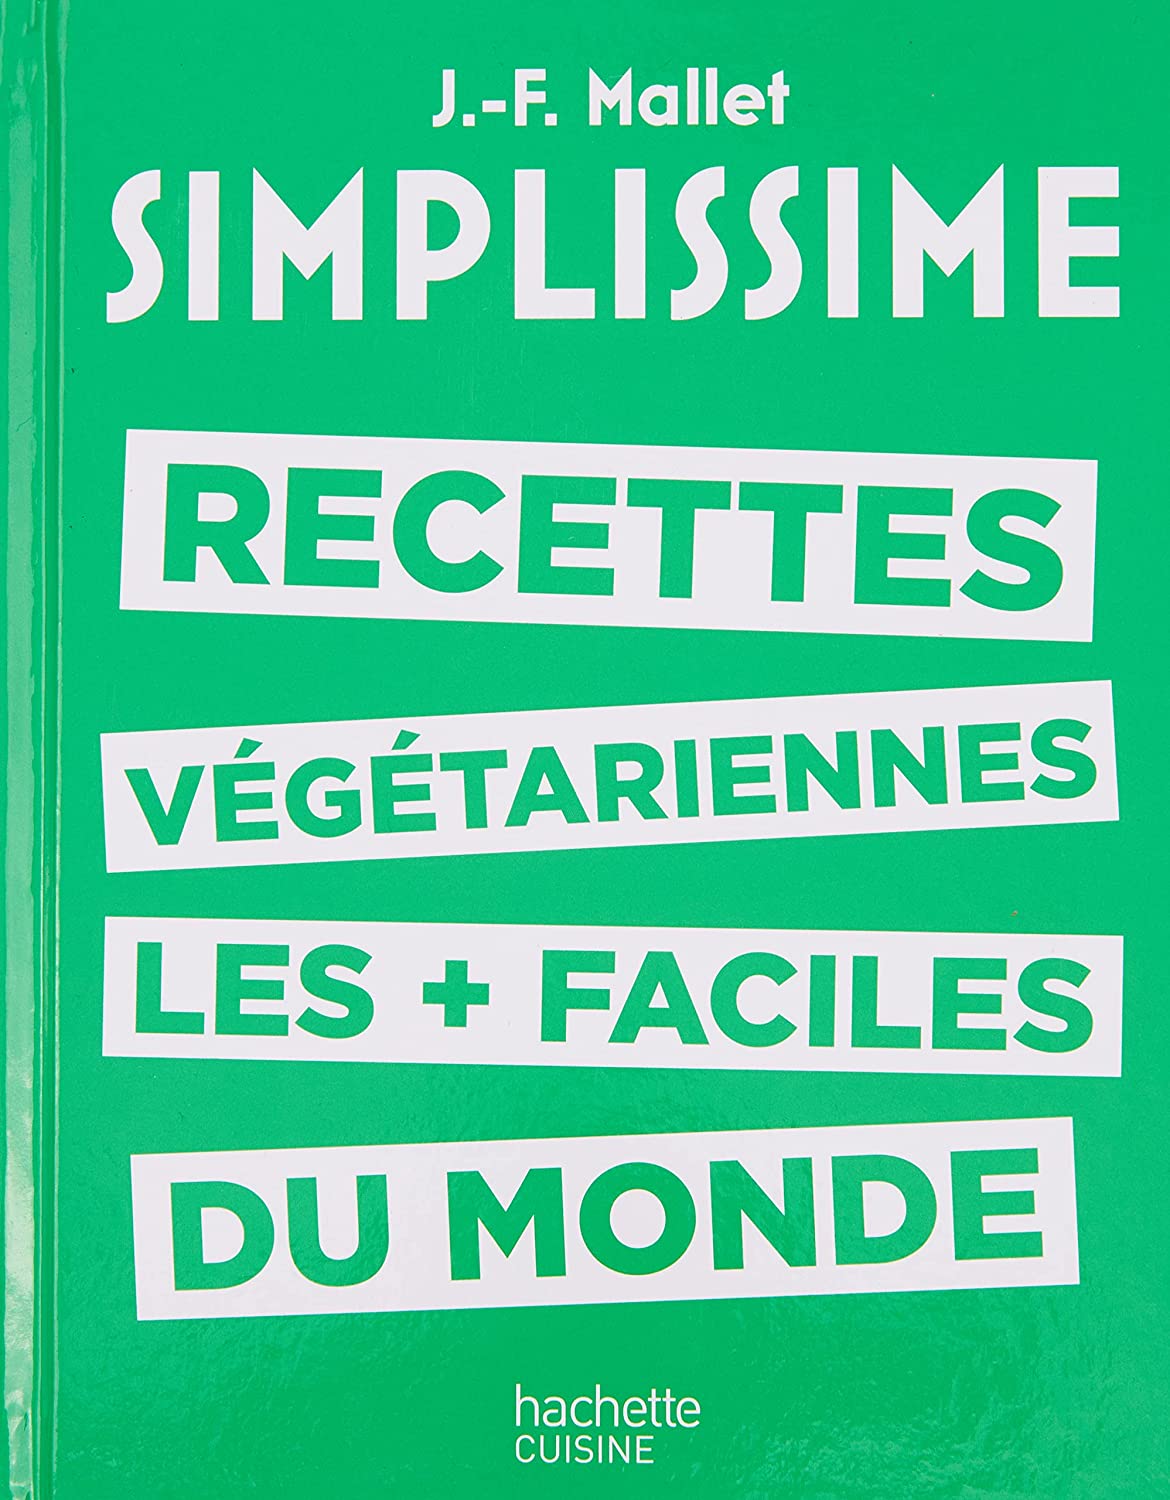  SIMPLISSIME - Les recettes végétariennes les plus faciles du monde 